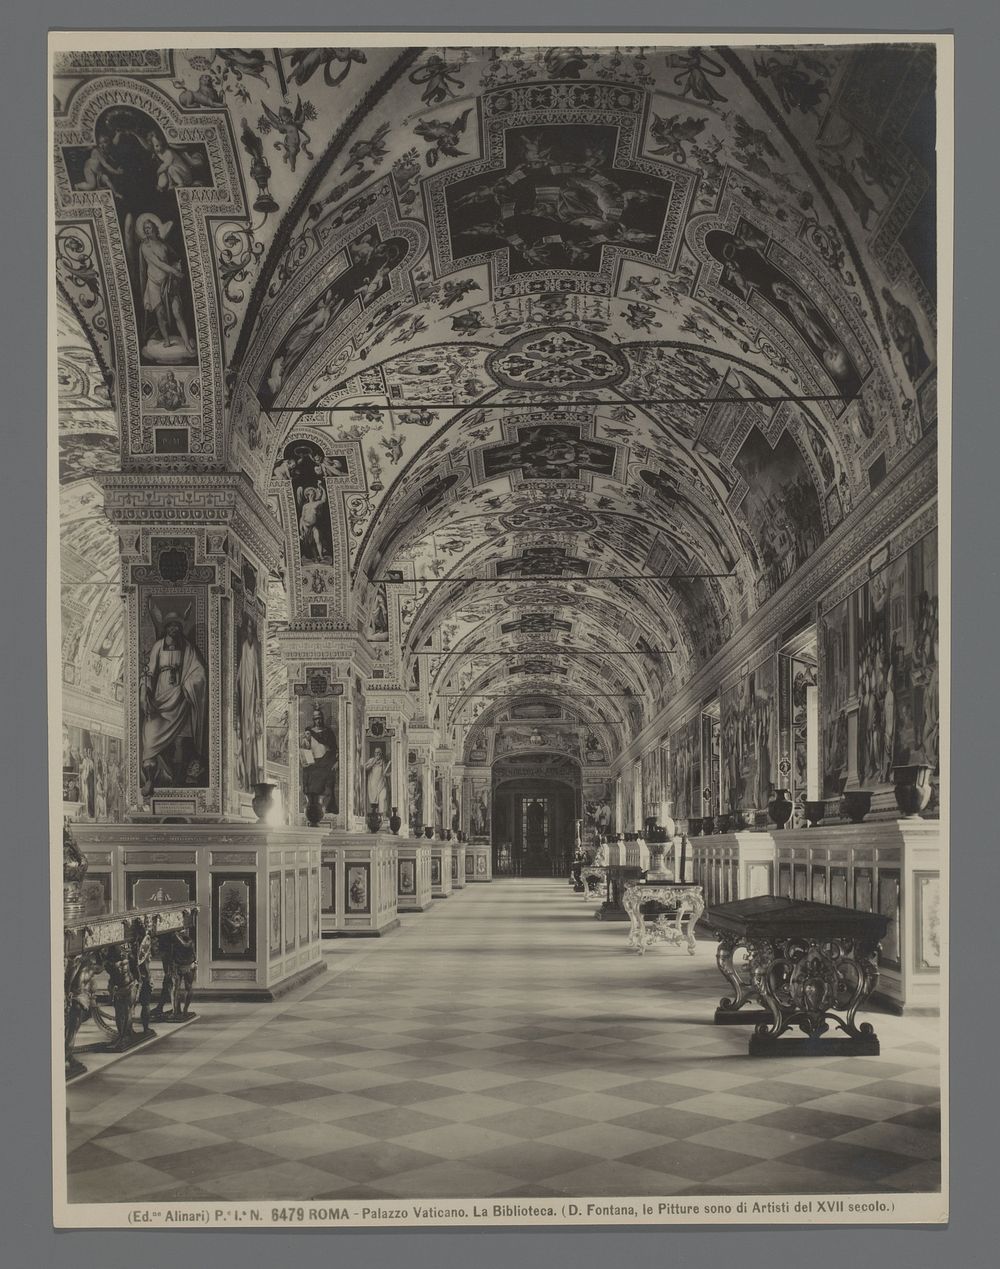 Interieur van de Vaticaanse Bibliotheek (1880 - 1920) by Fratelli Alinari